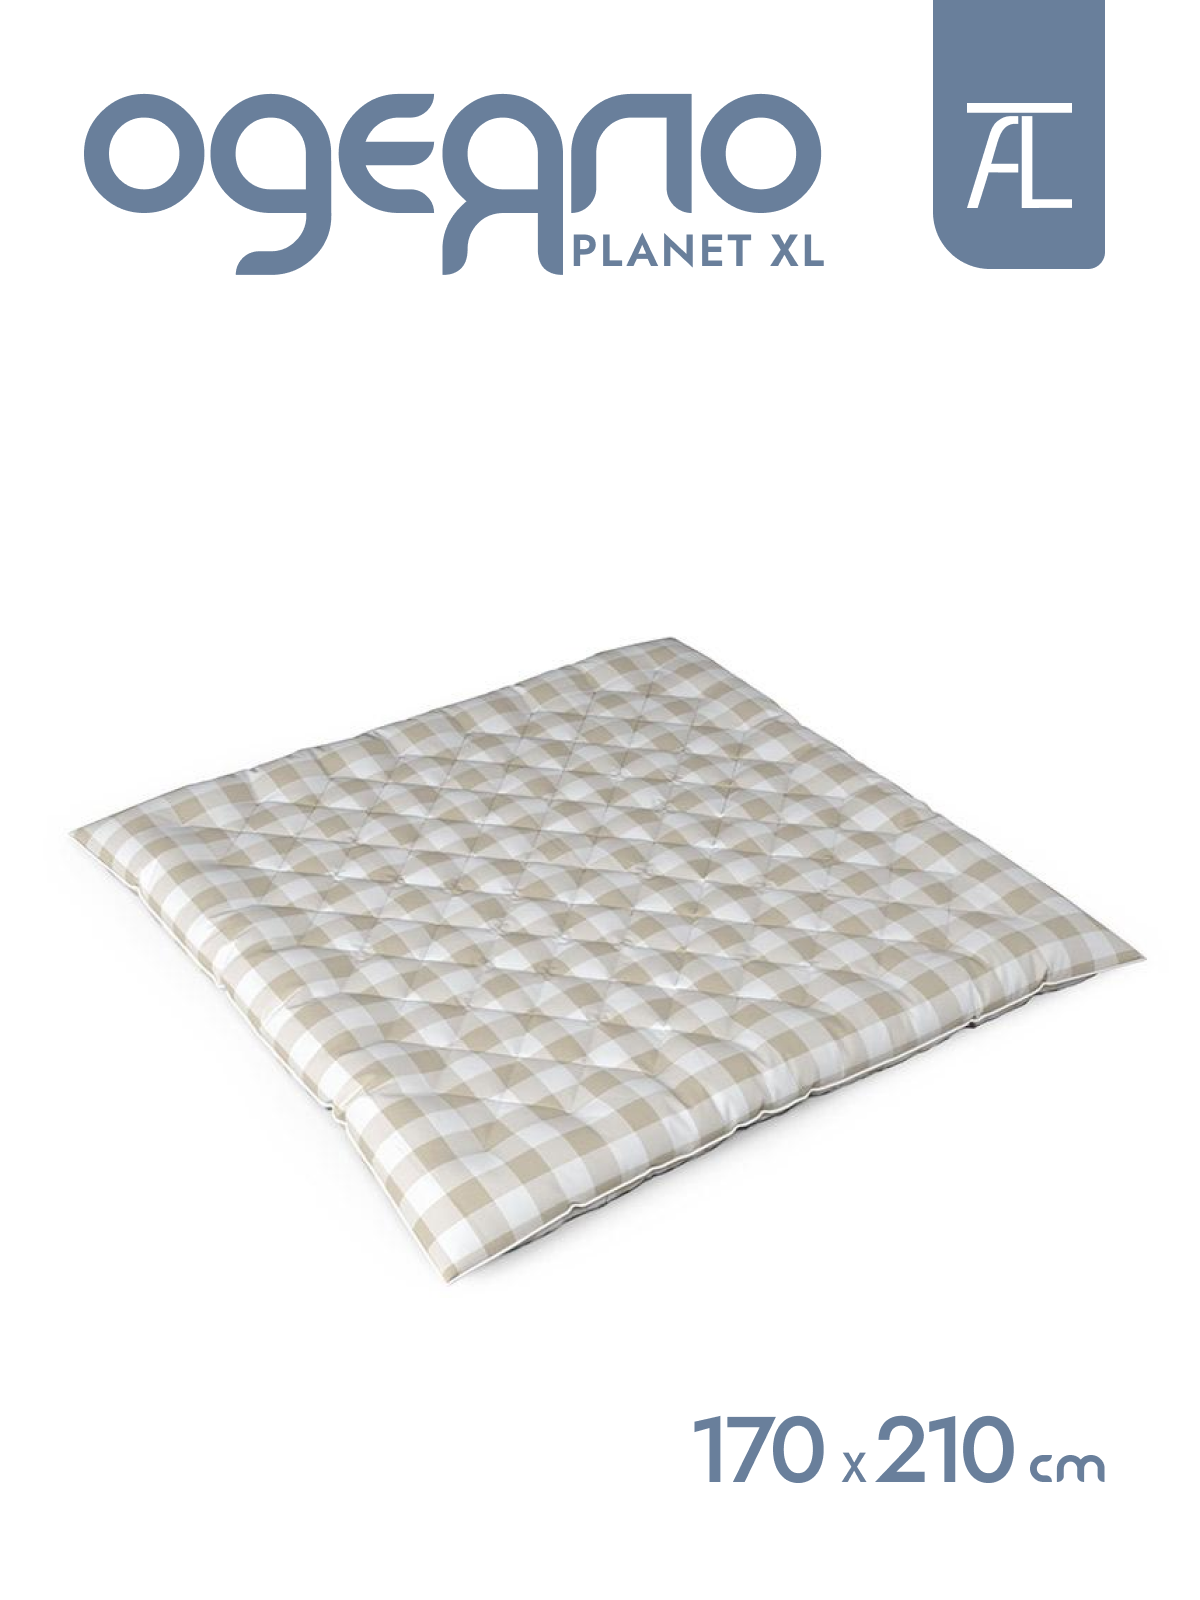 Одеяло Planet XL двухспальное Mr.Mattress, 170х210 см